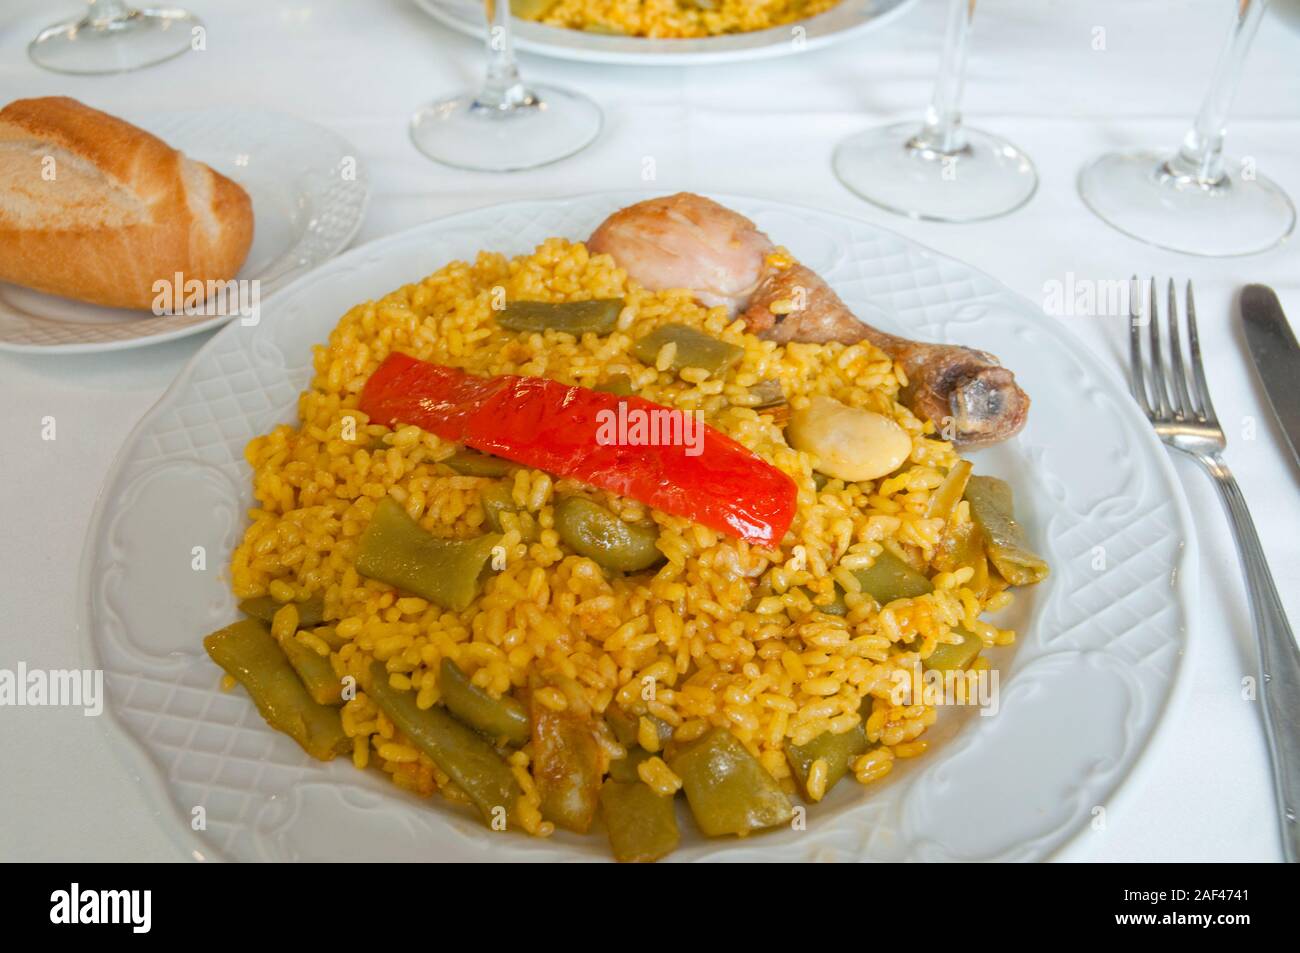 Paella valenciana serving. Spain. Stock Photo